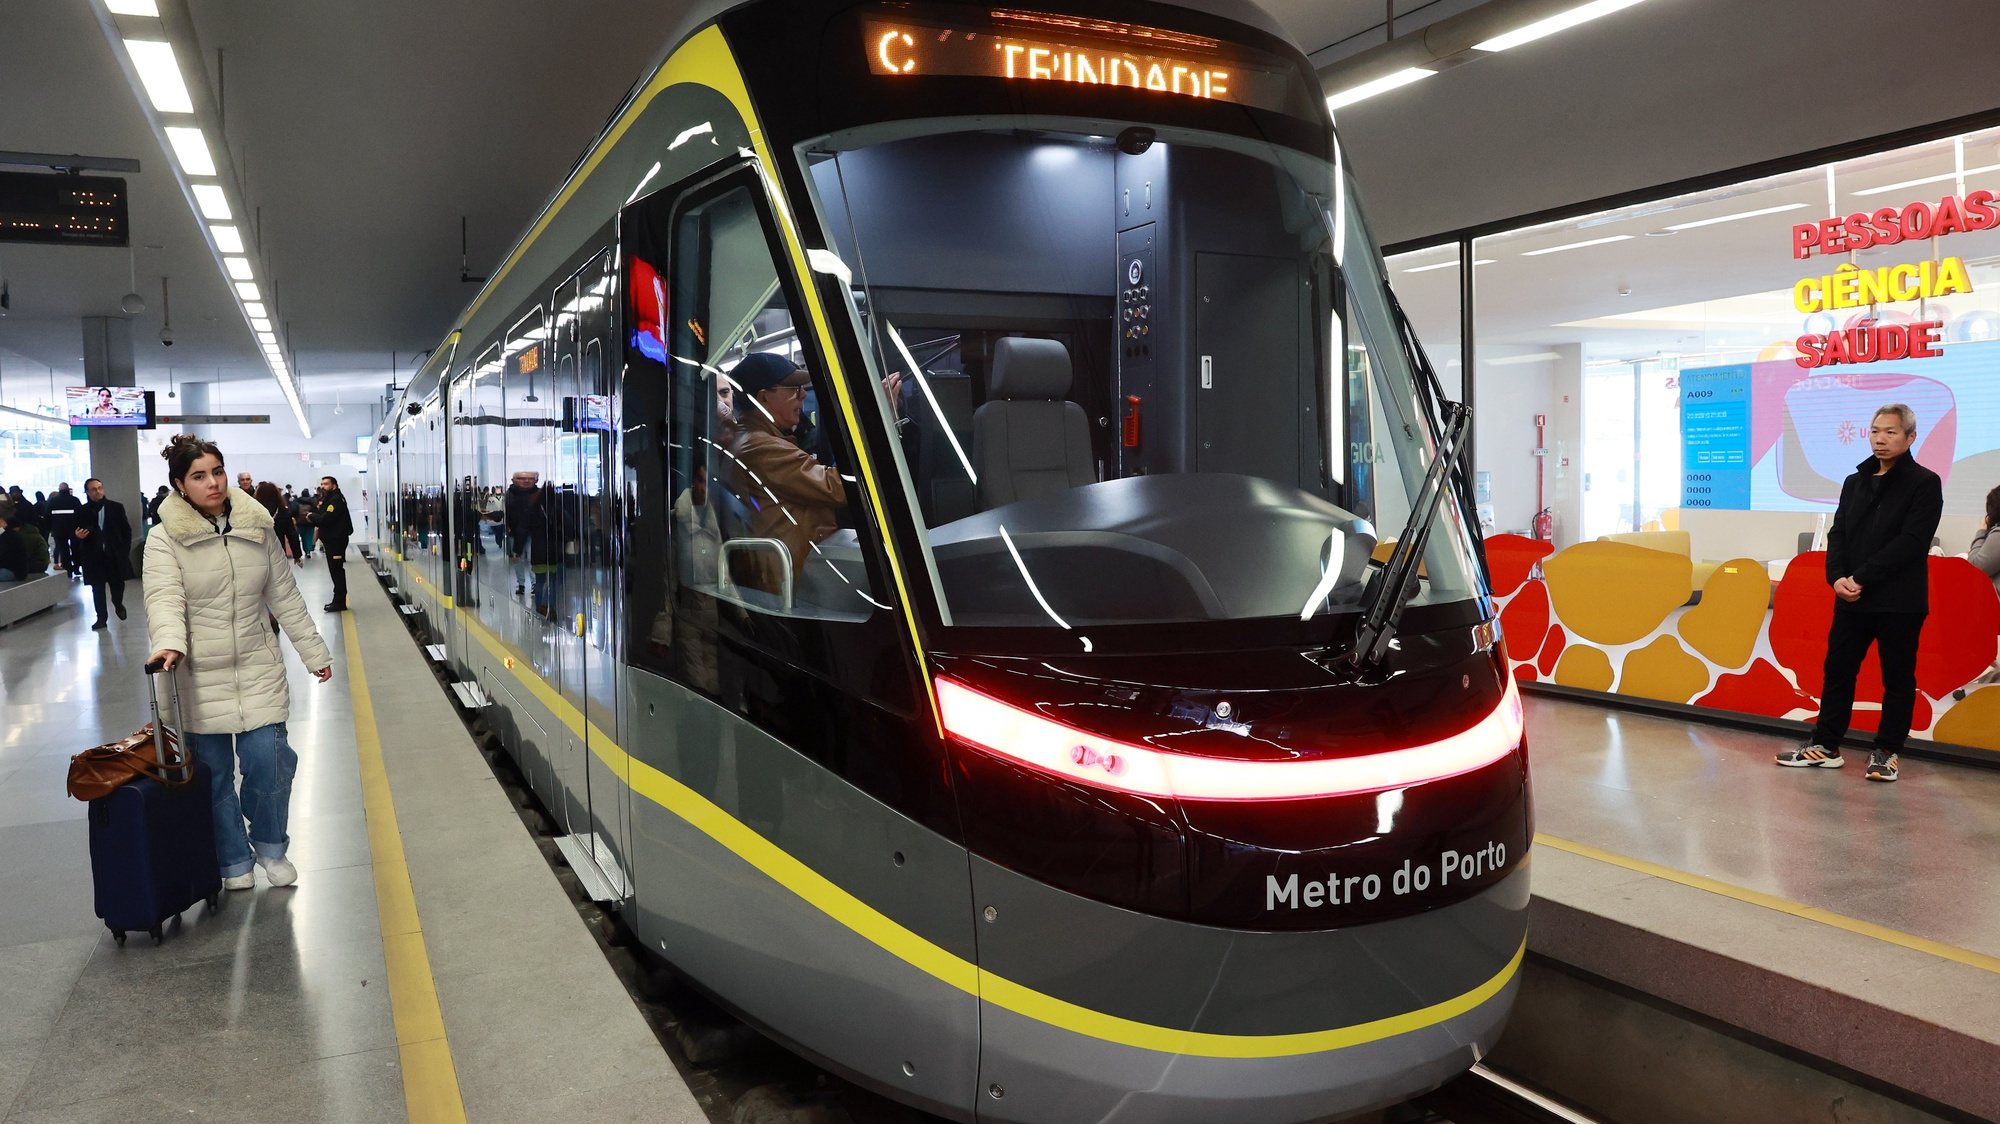 Novo veículo da frota do Metro do Porto,11 de fevereiro 2023. O novo veículo vai ficar em exposição na estação da Trindade até dia 14 com visitas abertas a toda a população. ESTELA SILVA/LUSA